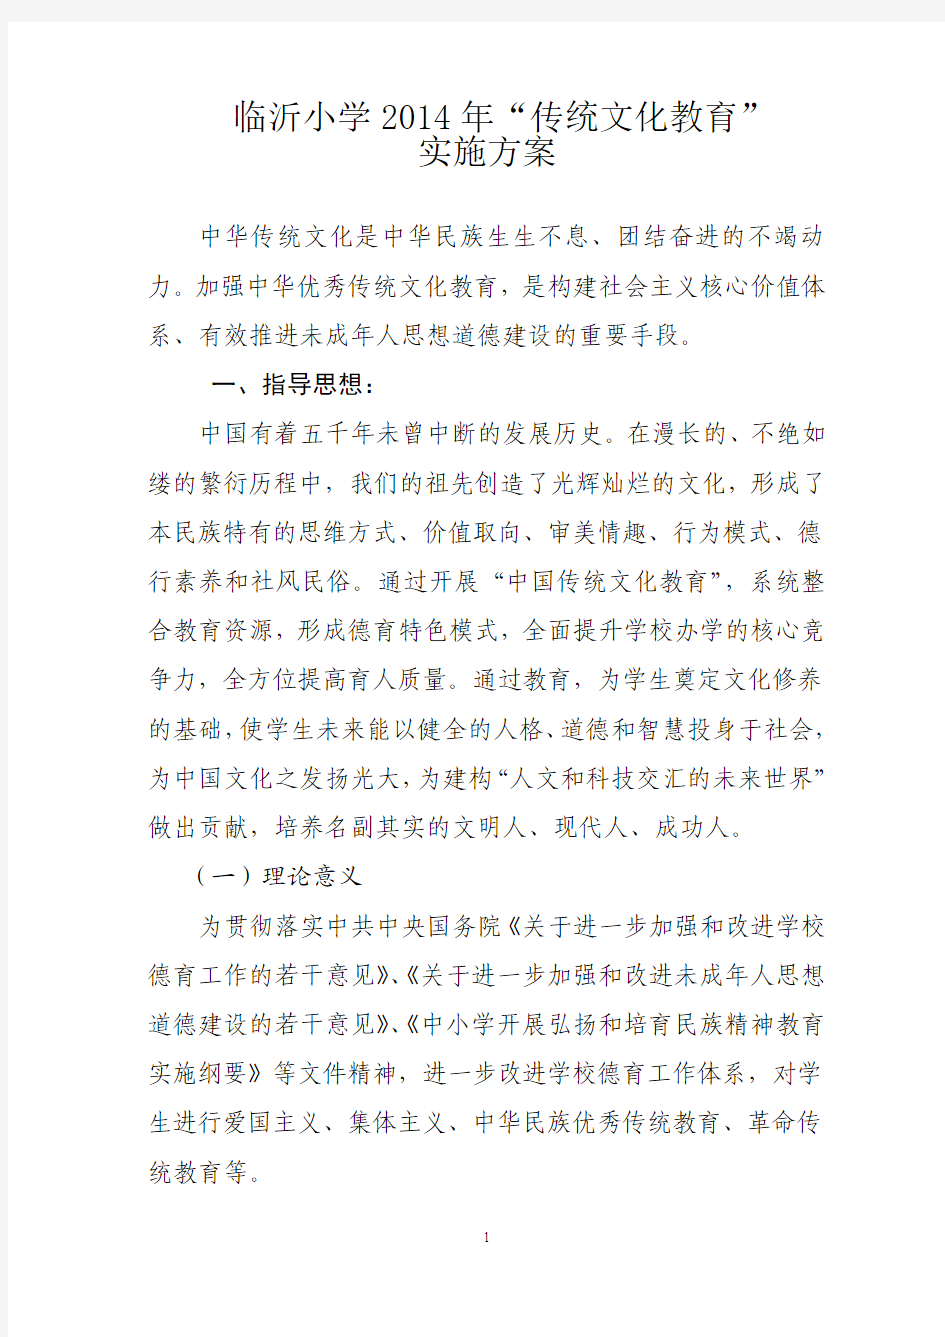 临沂小学2014年“中华传统文化教育”实施方案